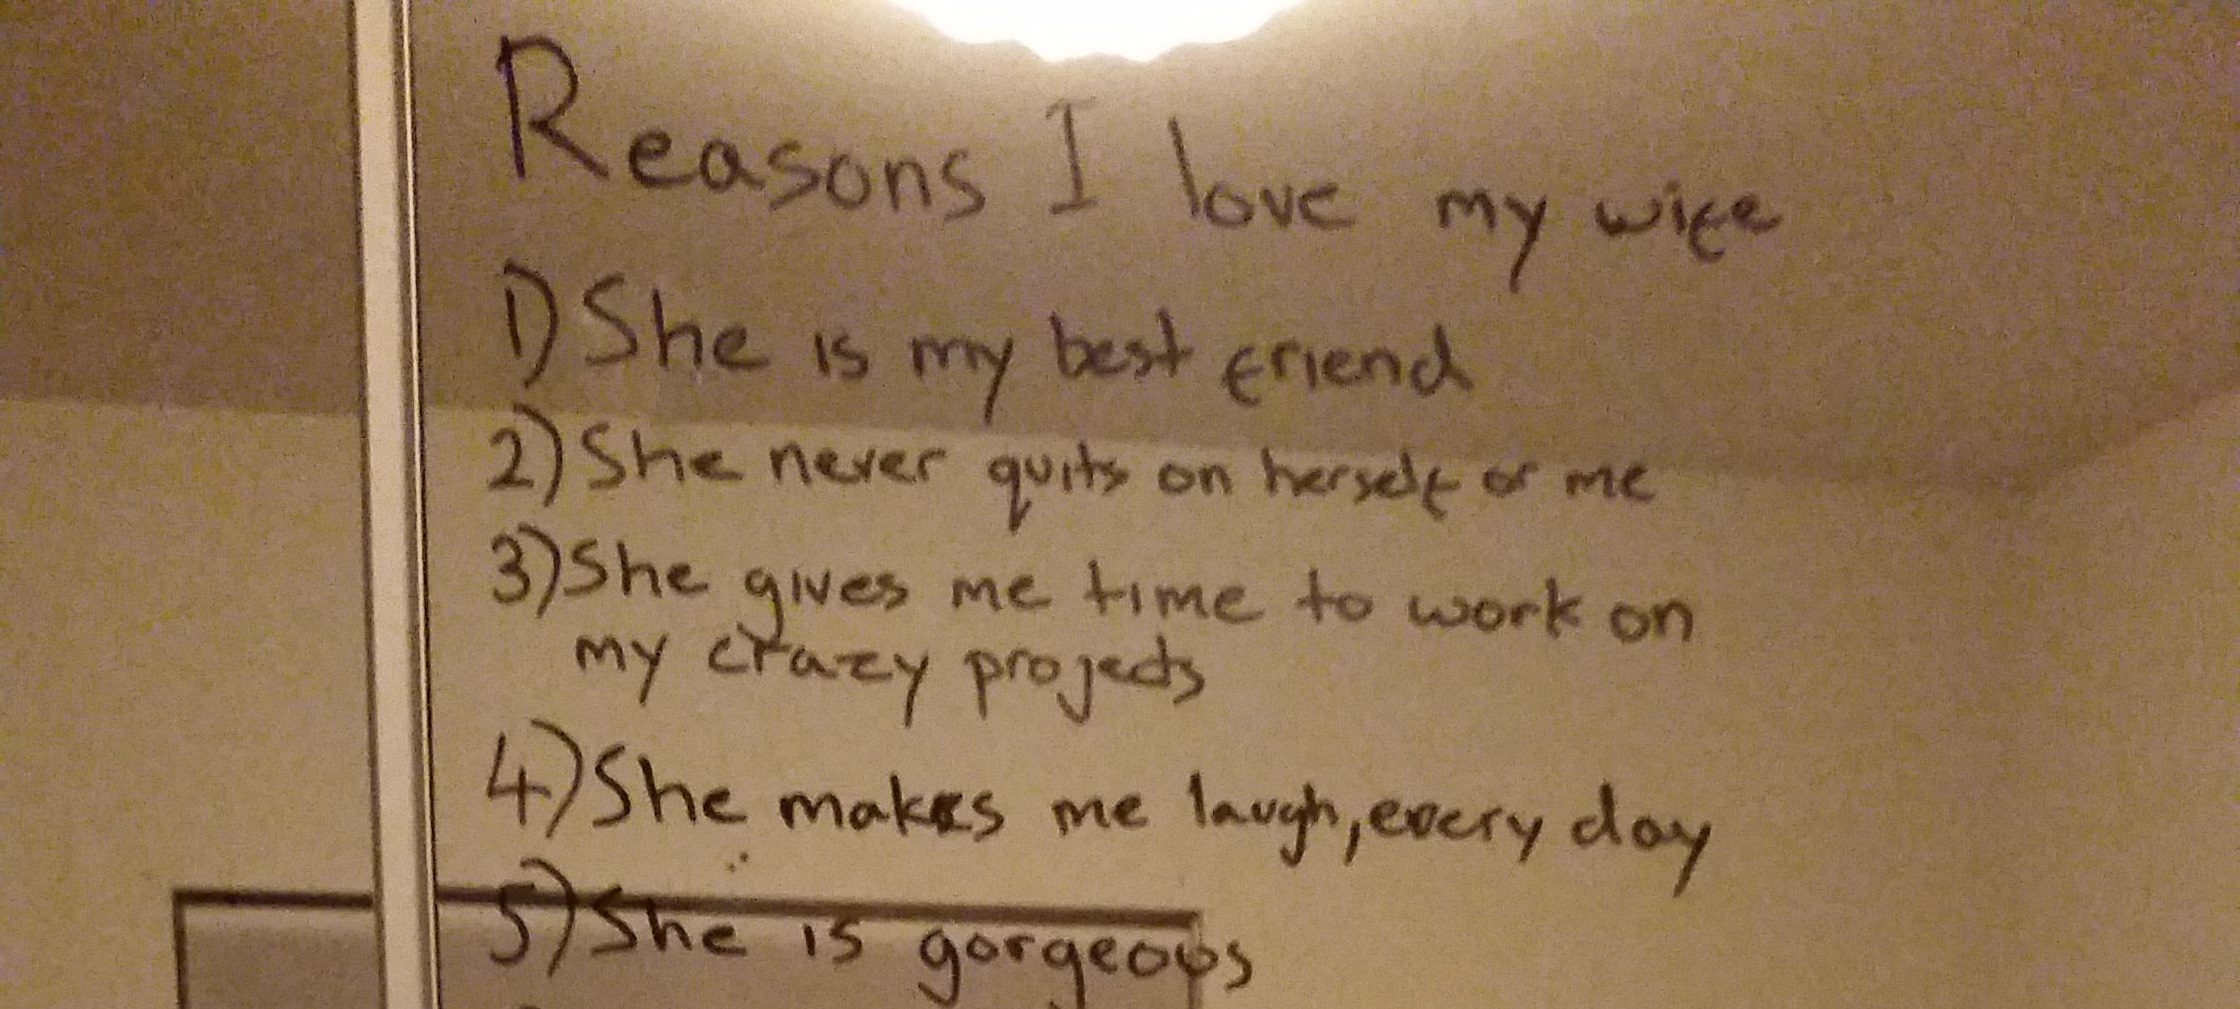 Boldognak szerette volna látni depressziós feleségét, ezért leírta neki, mi az a 15 dolog, amiért szerelmes belé